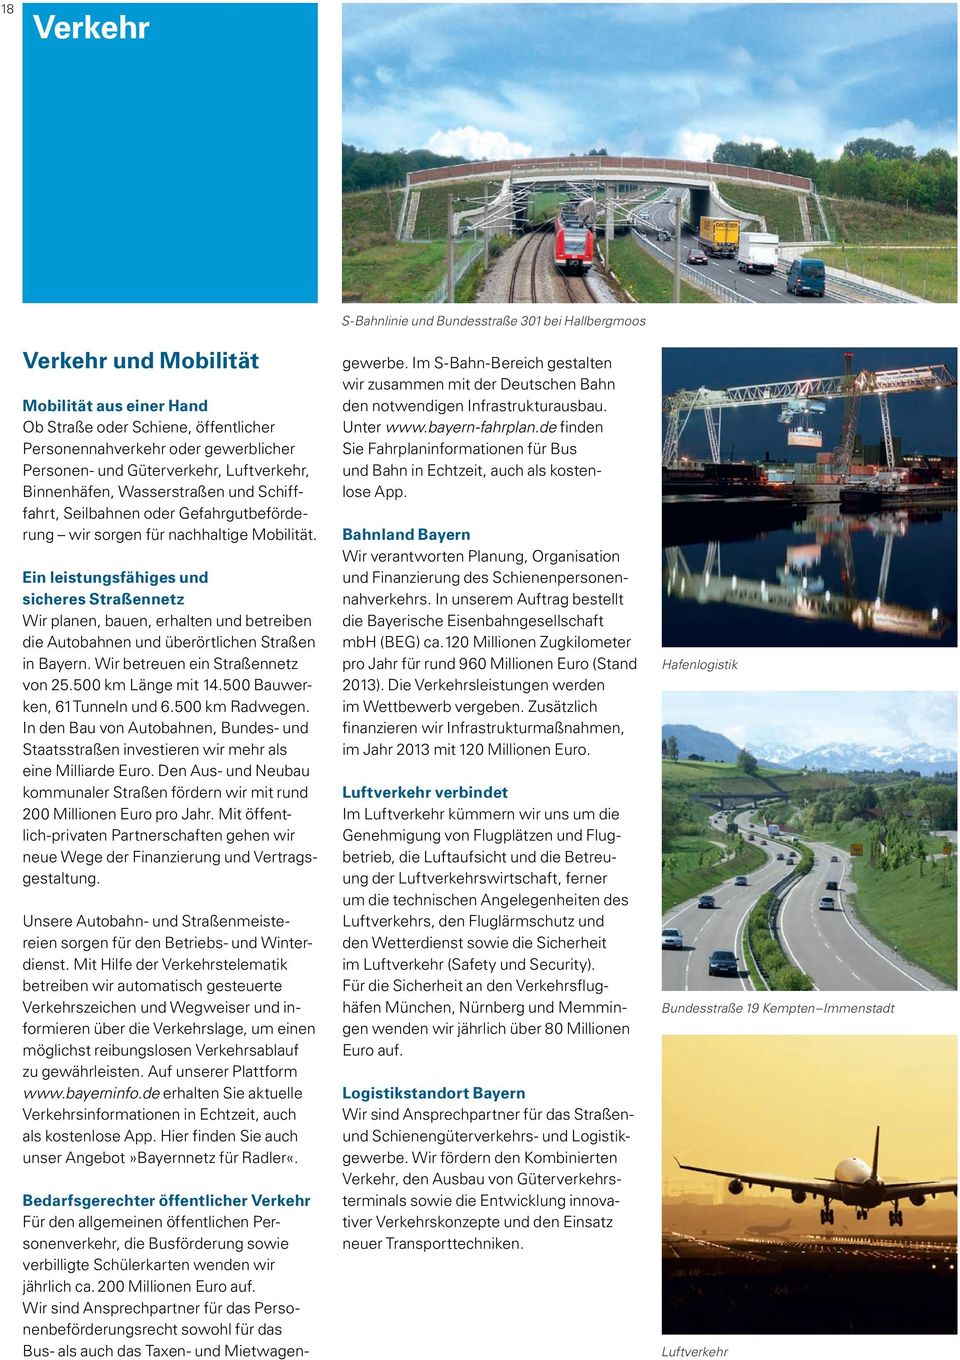 Ein leistungsfähiges und sicheres Straßennetz Wir planen, bauen, erhalten und betreiben die Autobahnen und überörtlichen Straßen in Bayern. Wir betreuen ein Straßennetz von 25.500 km Länge mit 14.